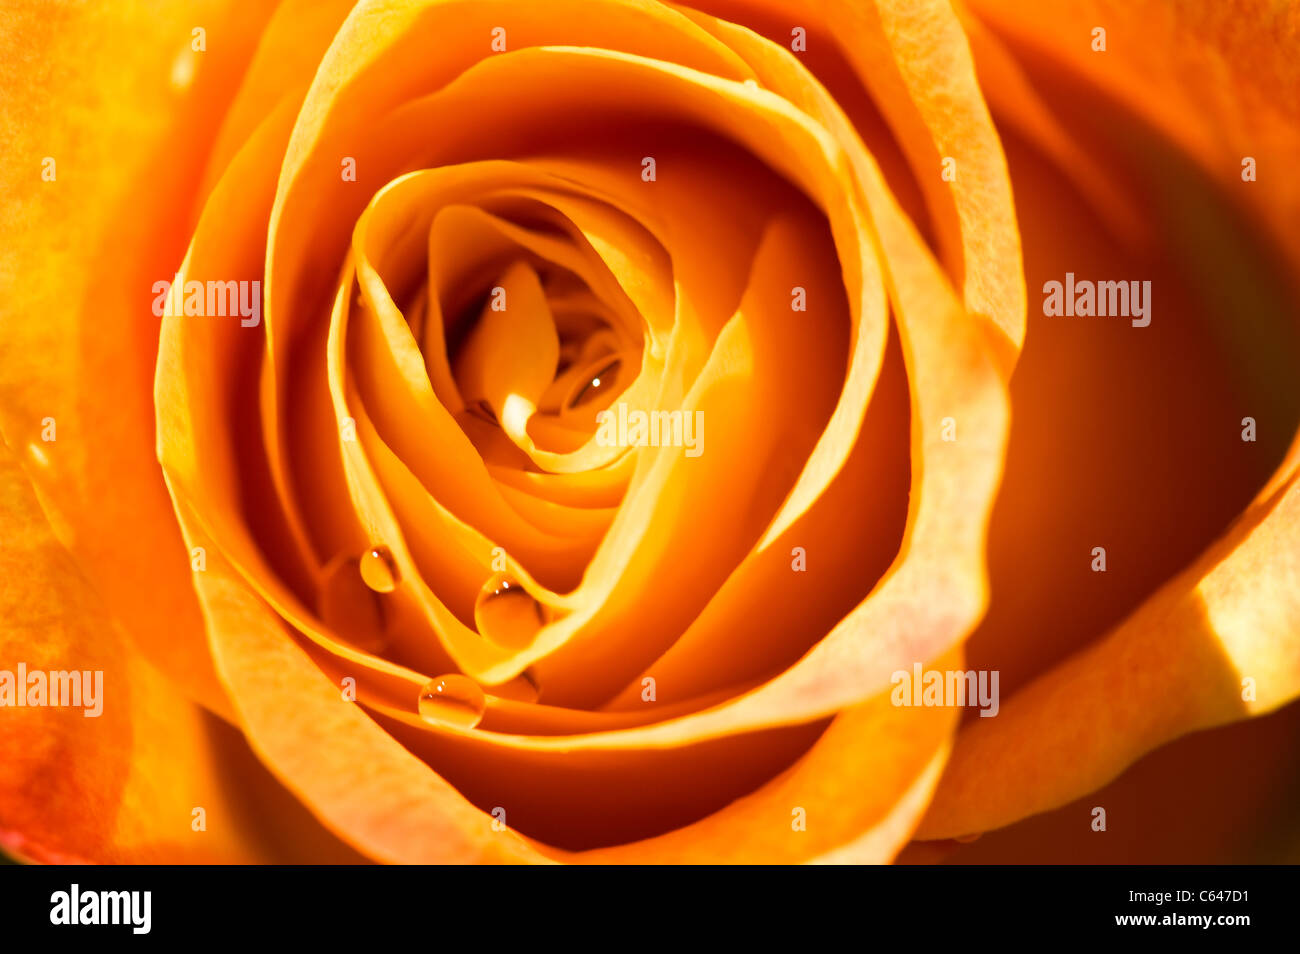 Objekt auf weiß - orange rose Close up Stockfoto